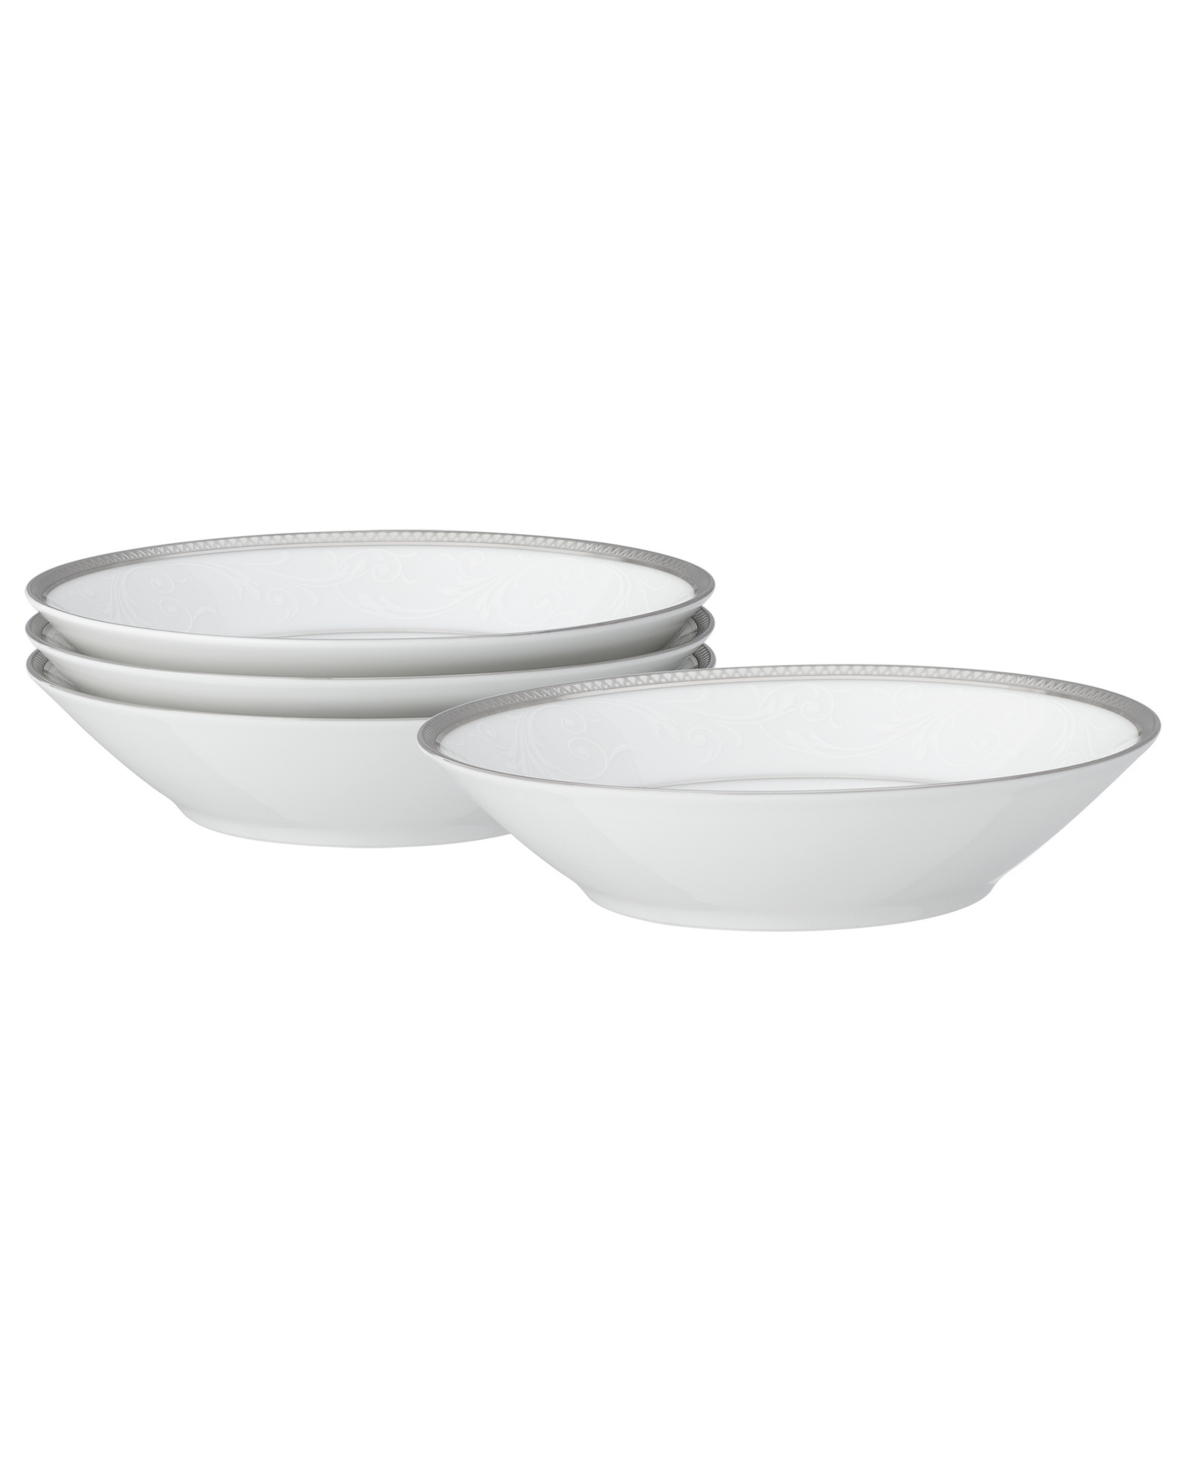 Noritake Regina Platinum Set Of 4 Fruit Bowls, Service For 4 In White